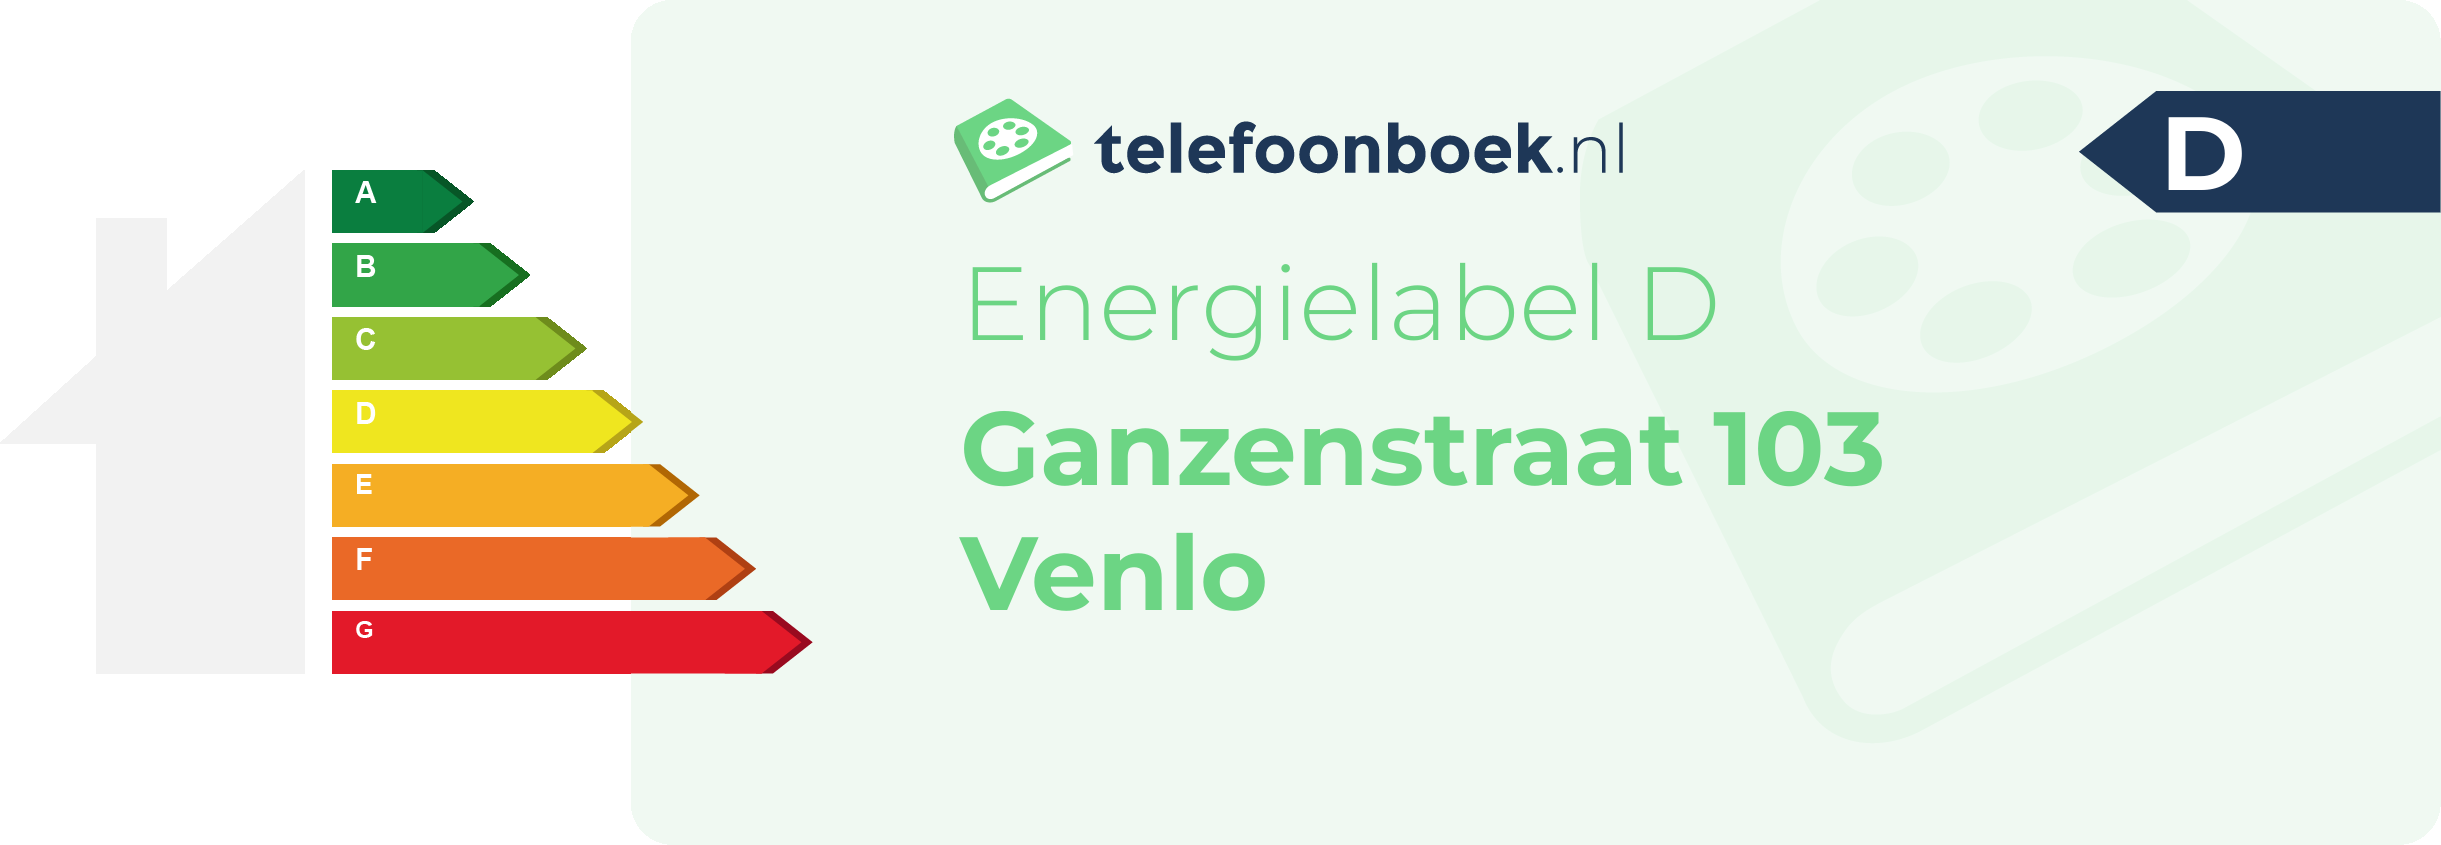 Energielabel Ganzenstraat 103 Venlo